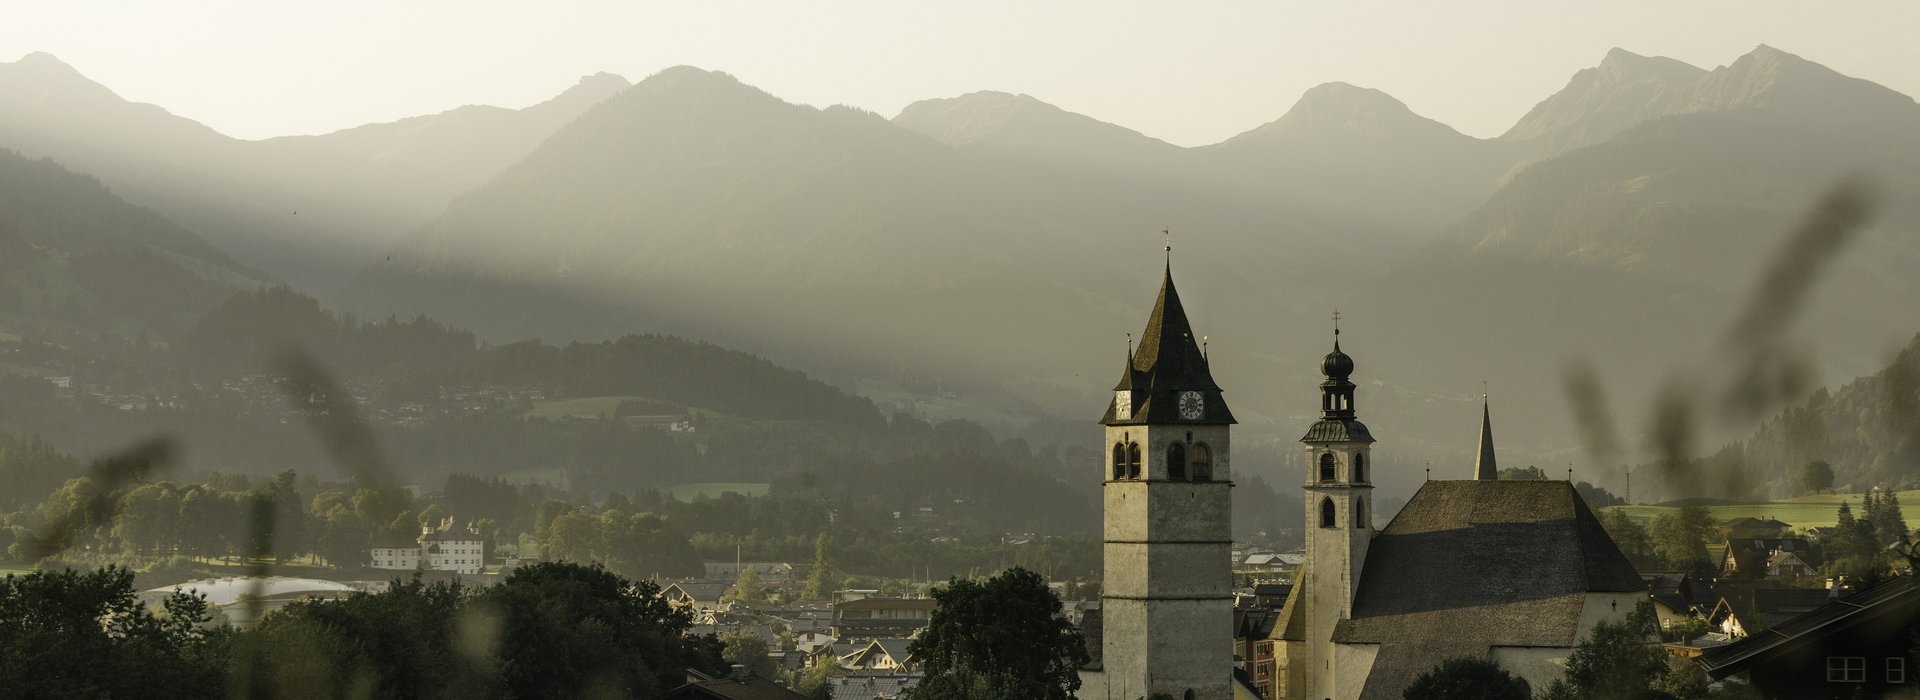 Blick über die Stadt Kitzbühel und die Kirche